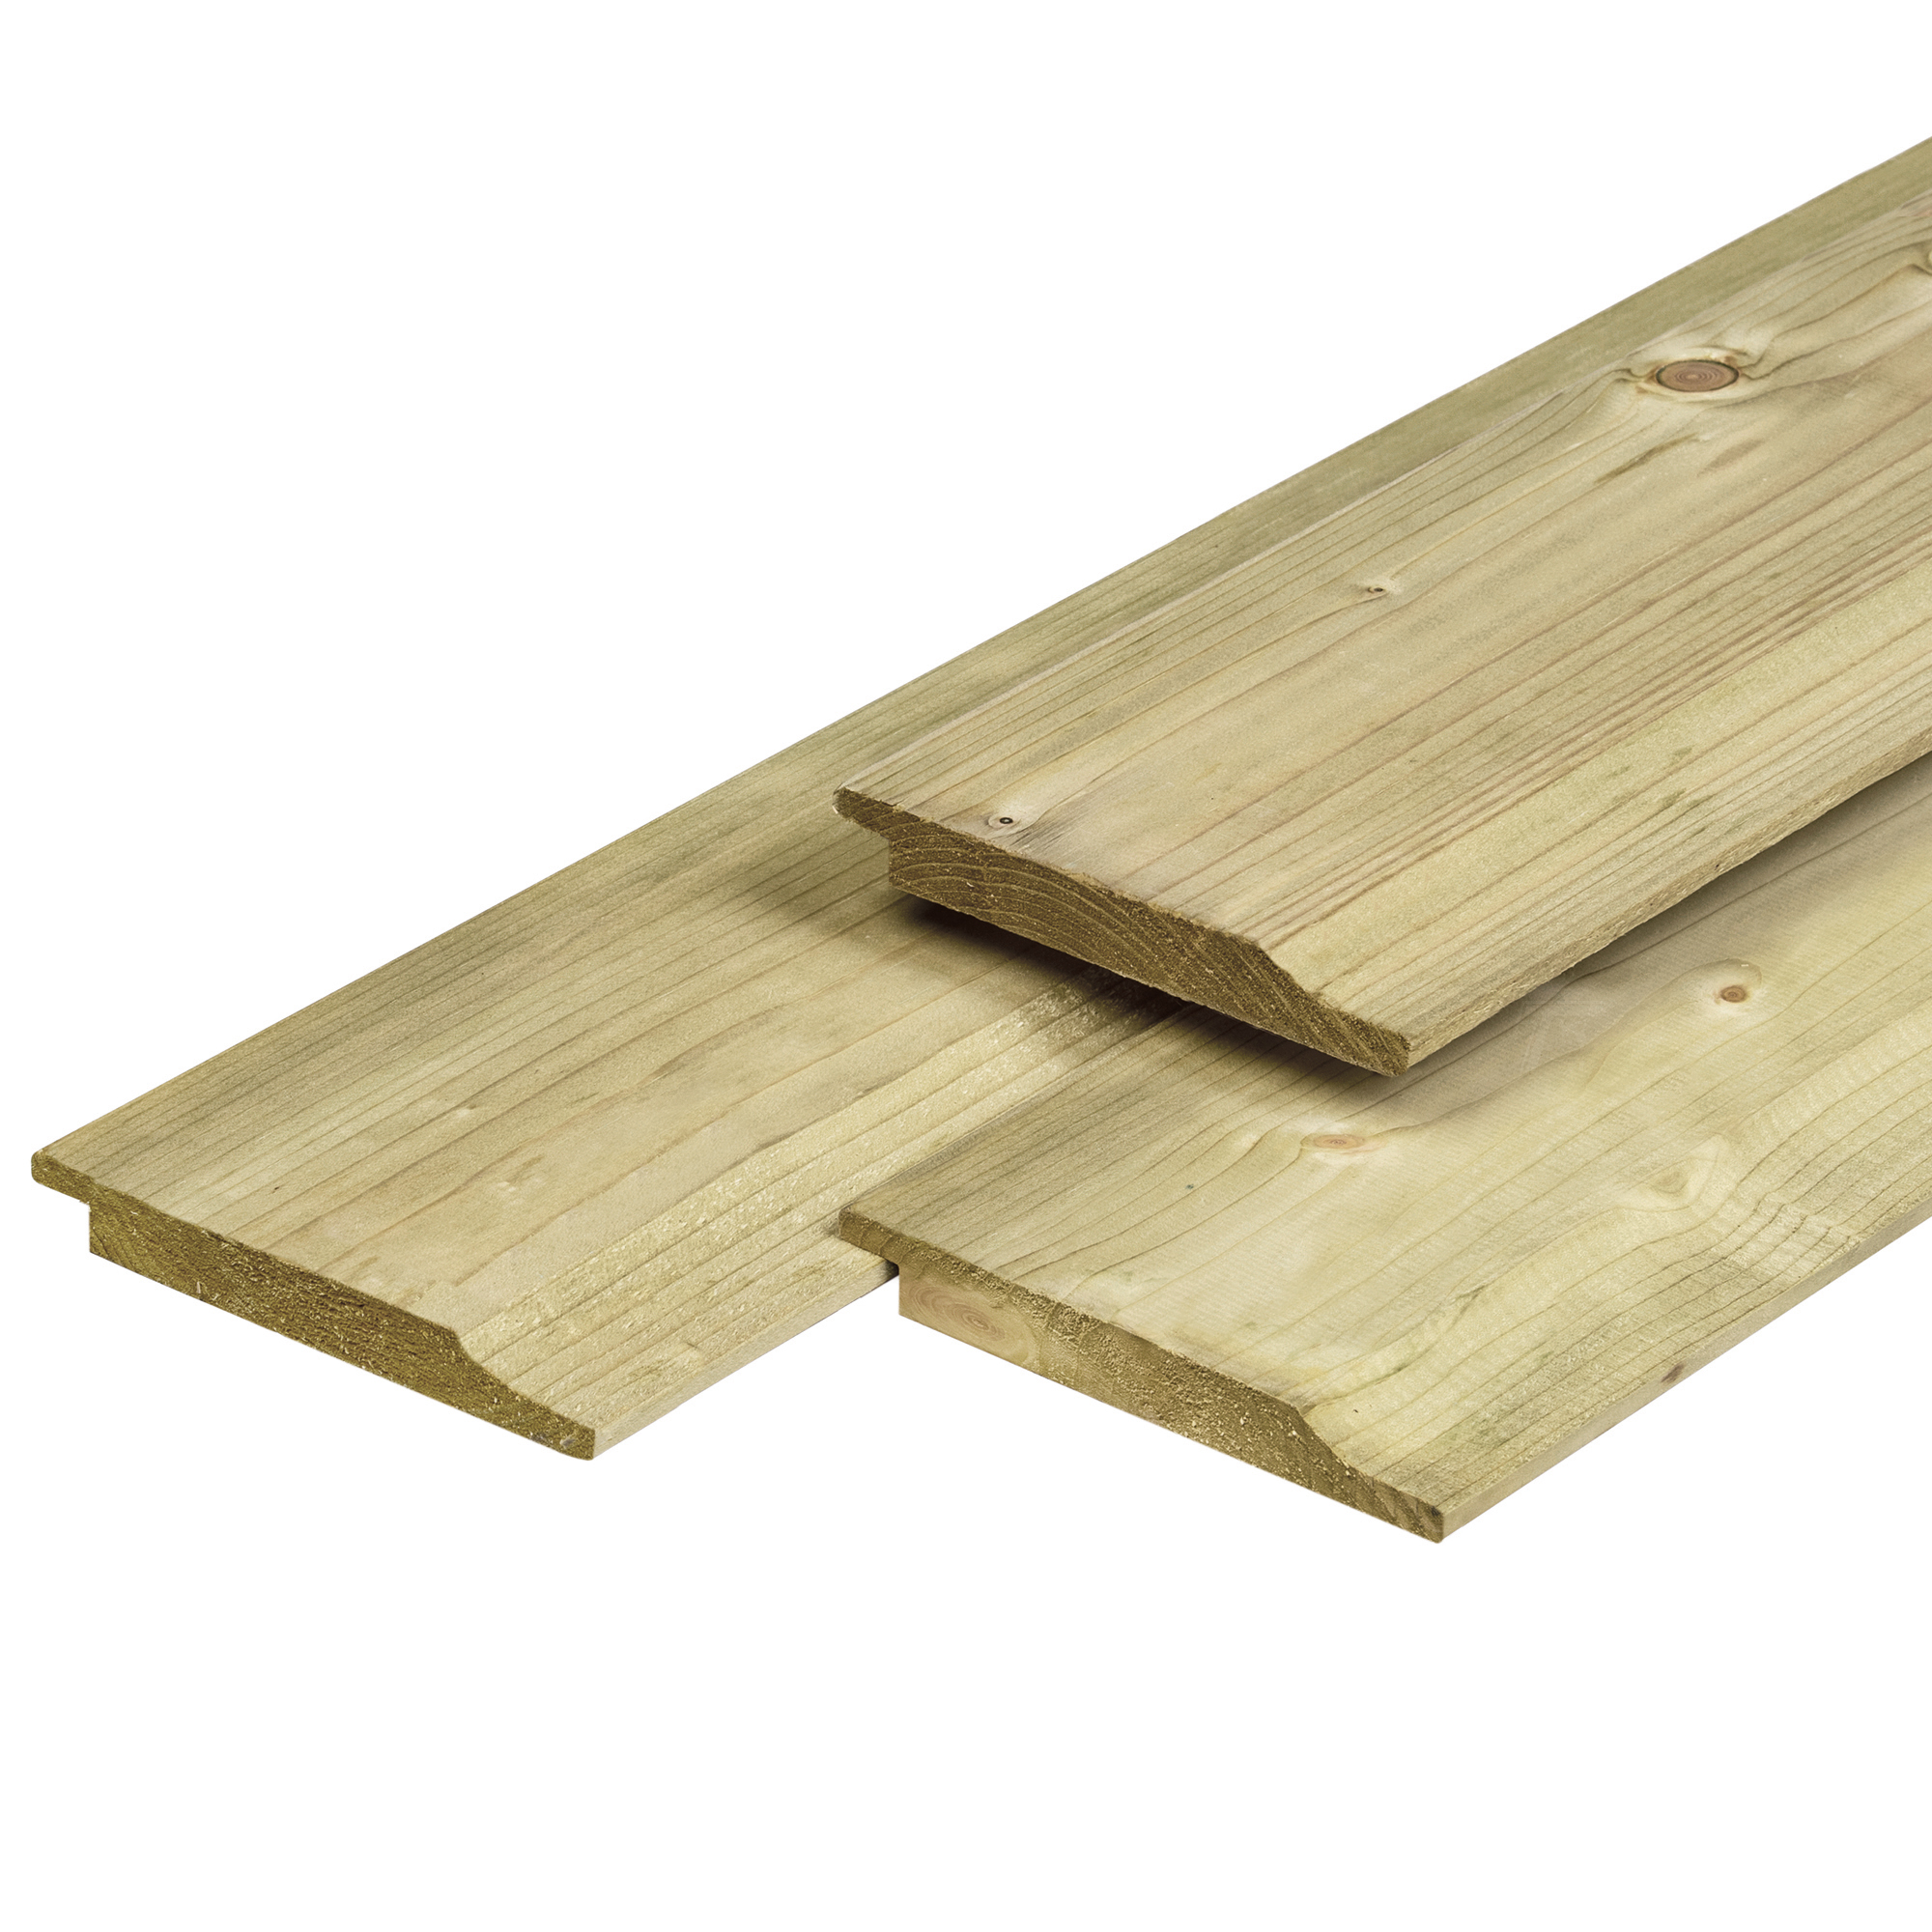 Profilholz mit Wechselfalz aus Nordeuropäische O/S-IV Fichtenholz 1.9x14.5x450cm